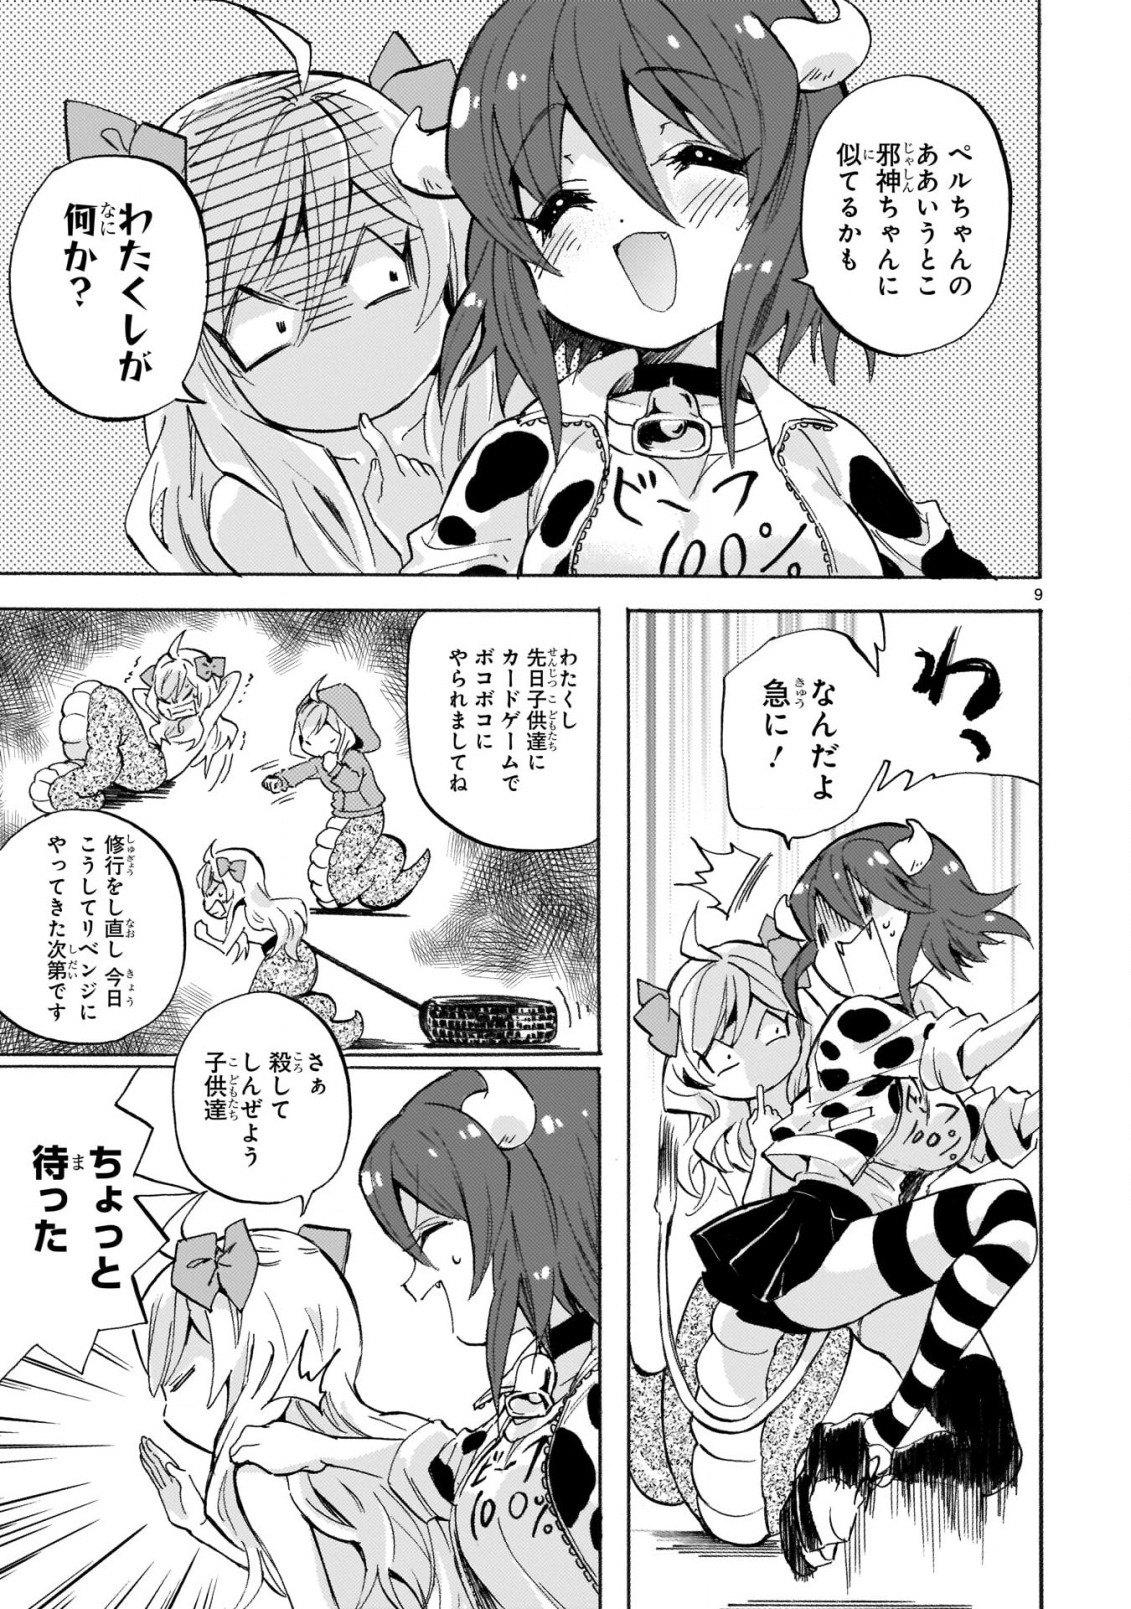 Jashin-chan Dropkick - Chapter 221 - Page 9